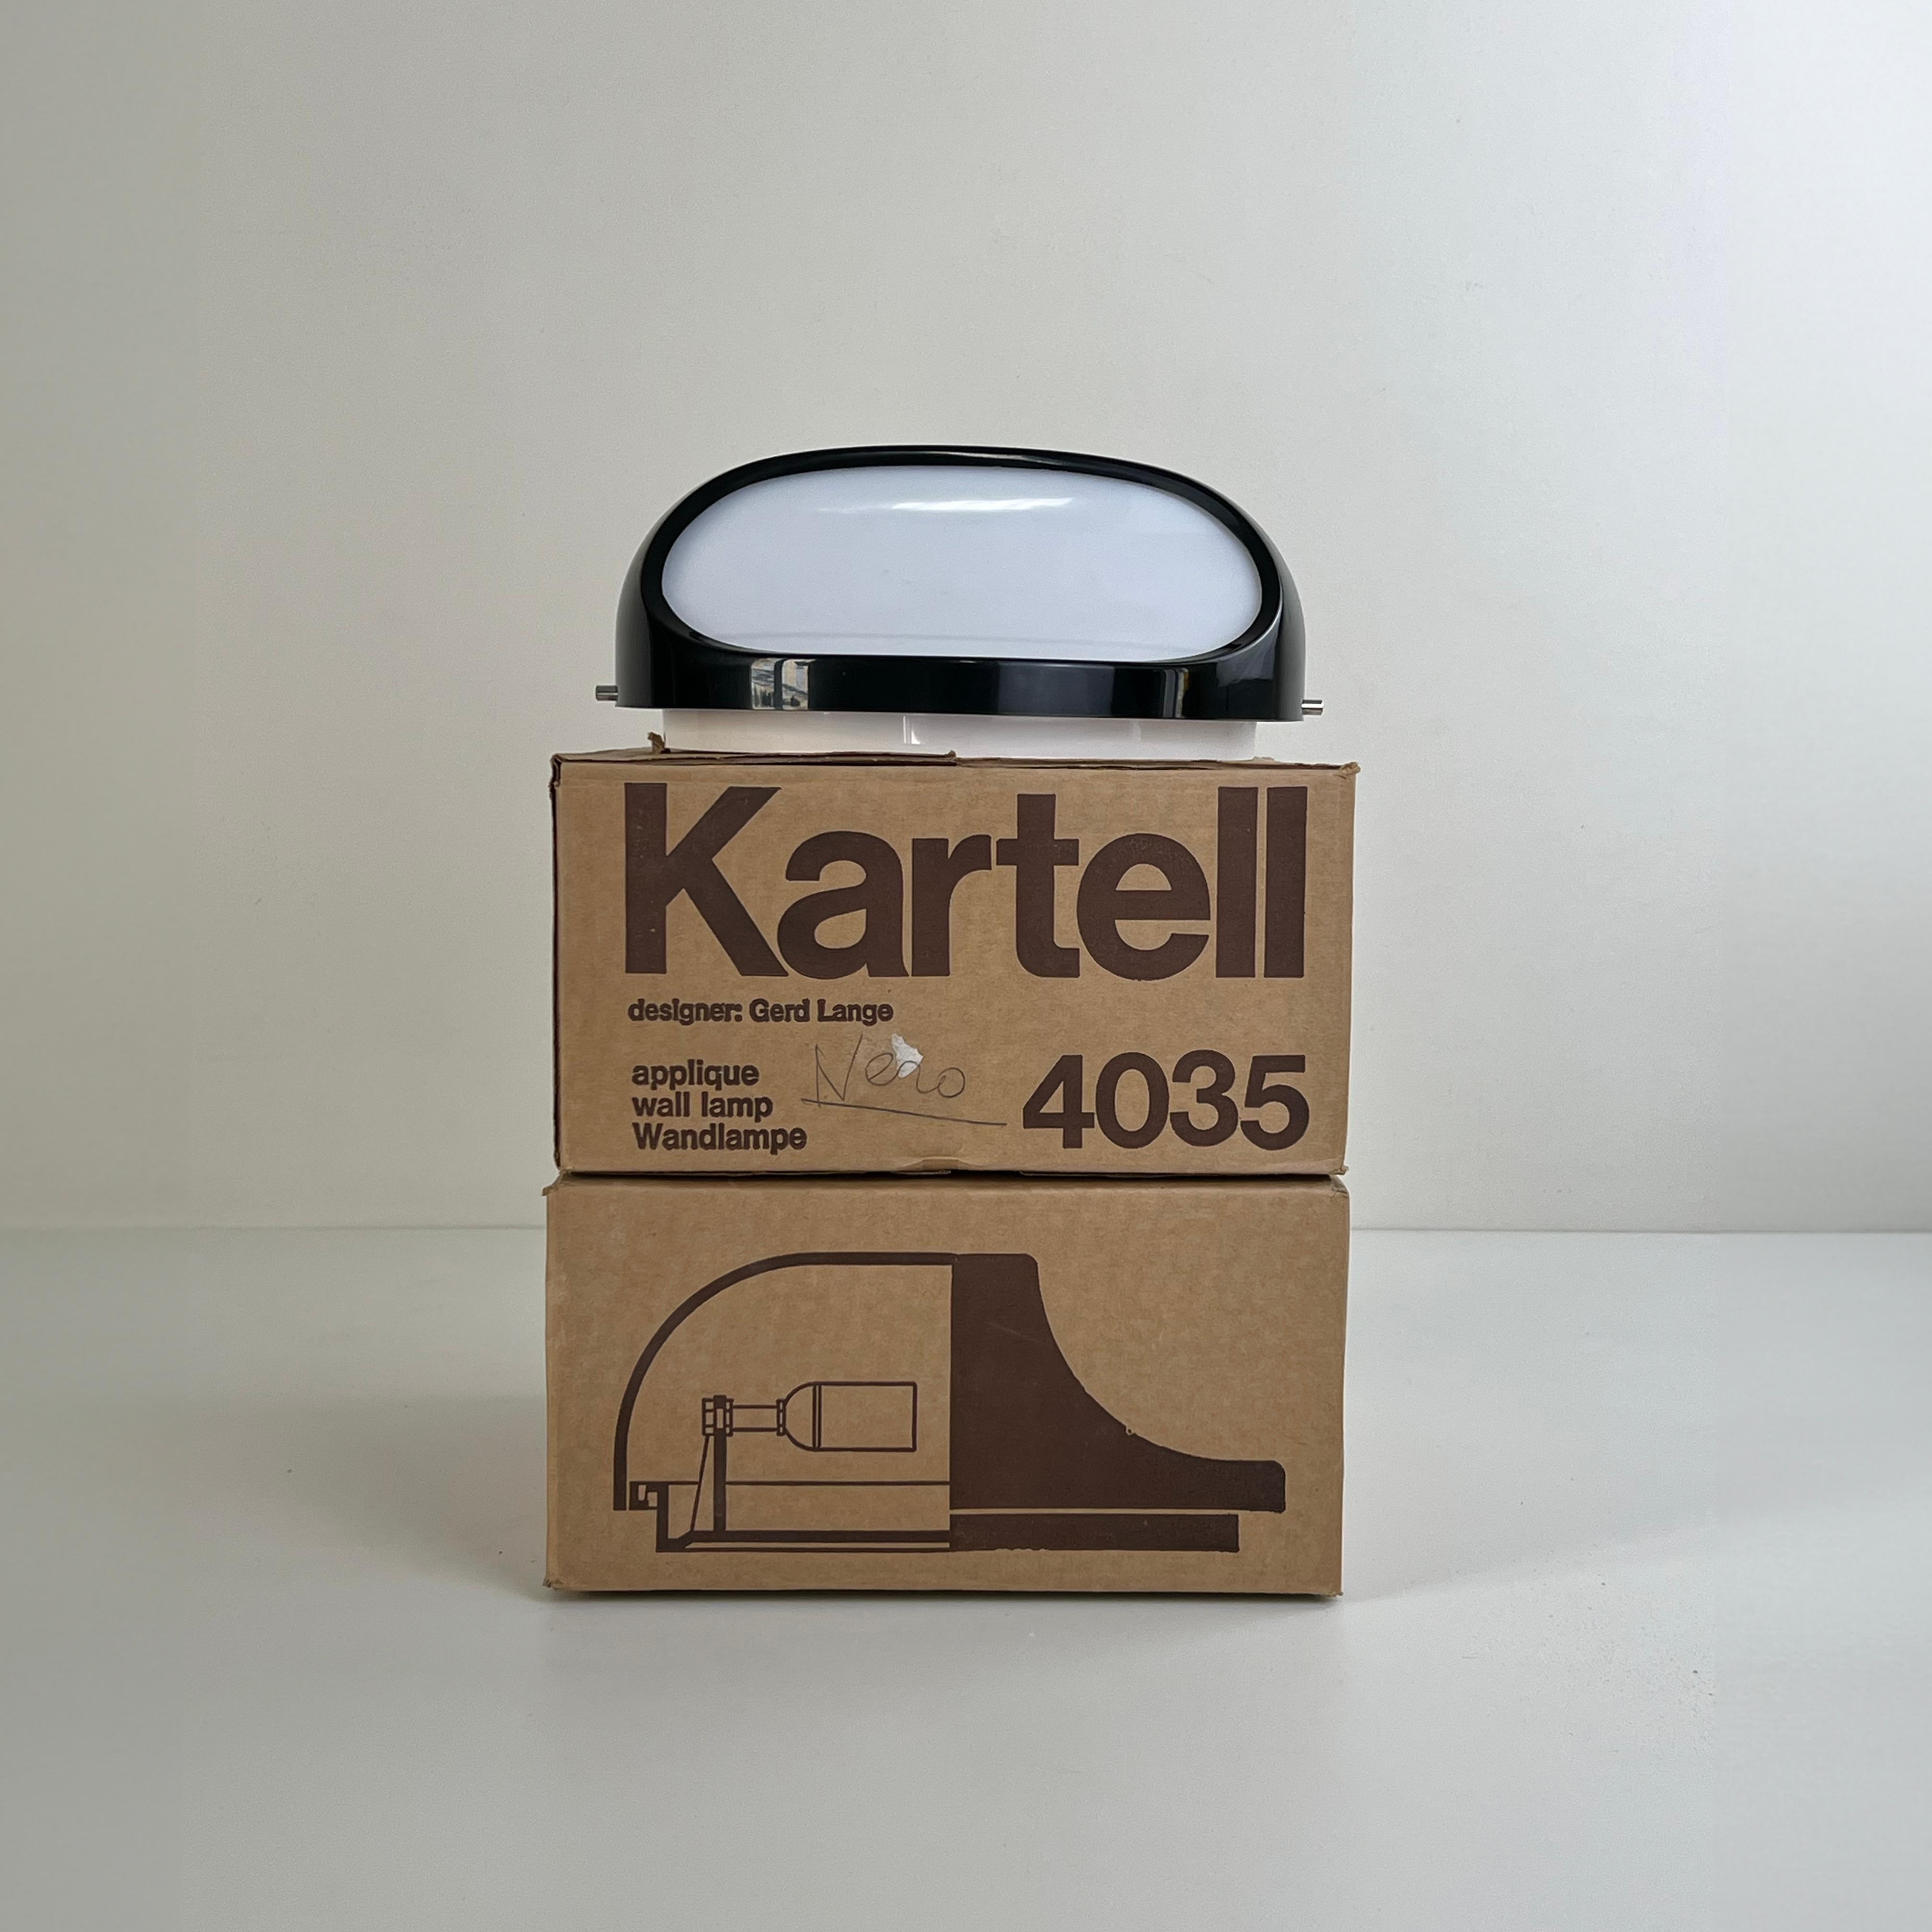 Die von Gerd Lange für Kartell entworfene 4035 Wandleuchte oder Tischleuchte ist eine verblüffende Verschmelzung von minimalistischer Eleganz und moderner Raffinesse. Mit ihren schlanken, klaren Linien und einem kräftigen, tiefschwarzen Farbton